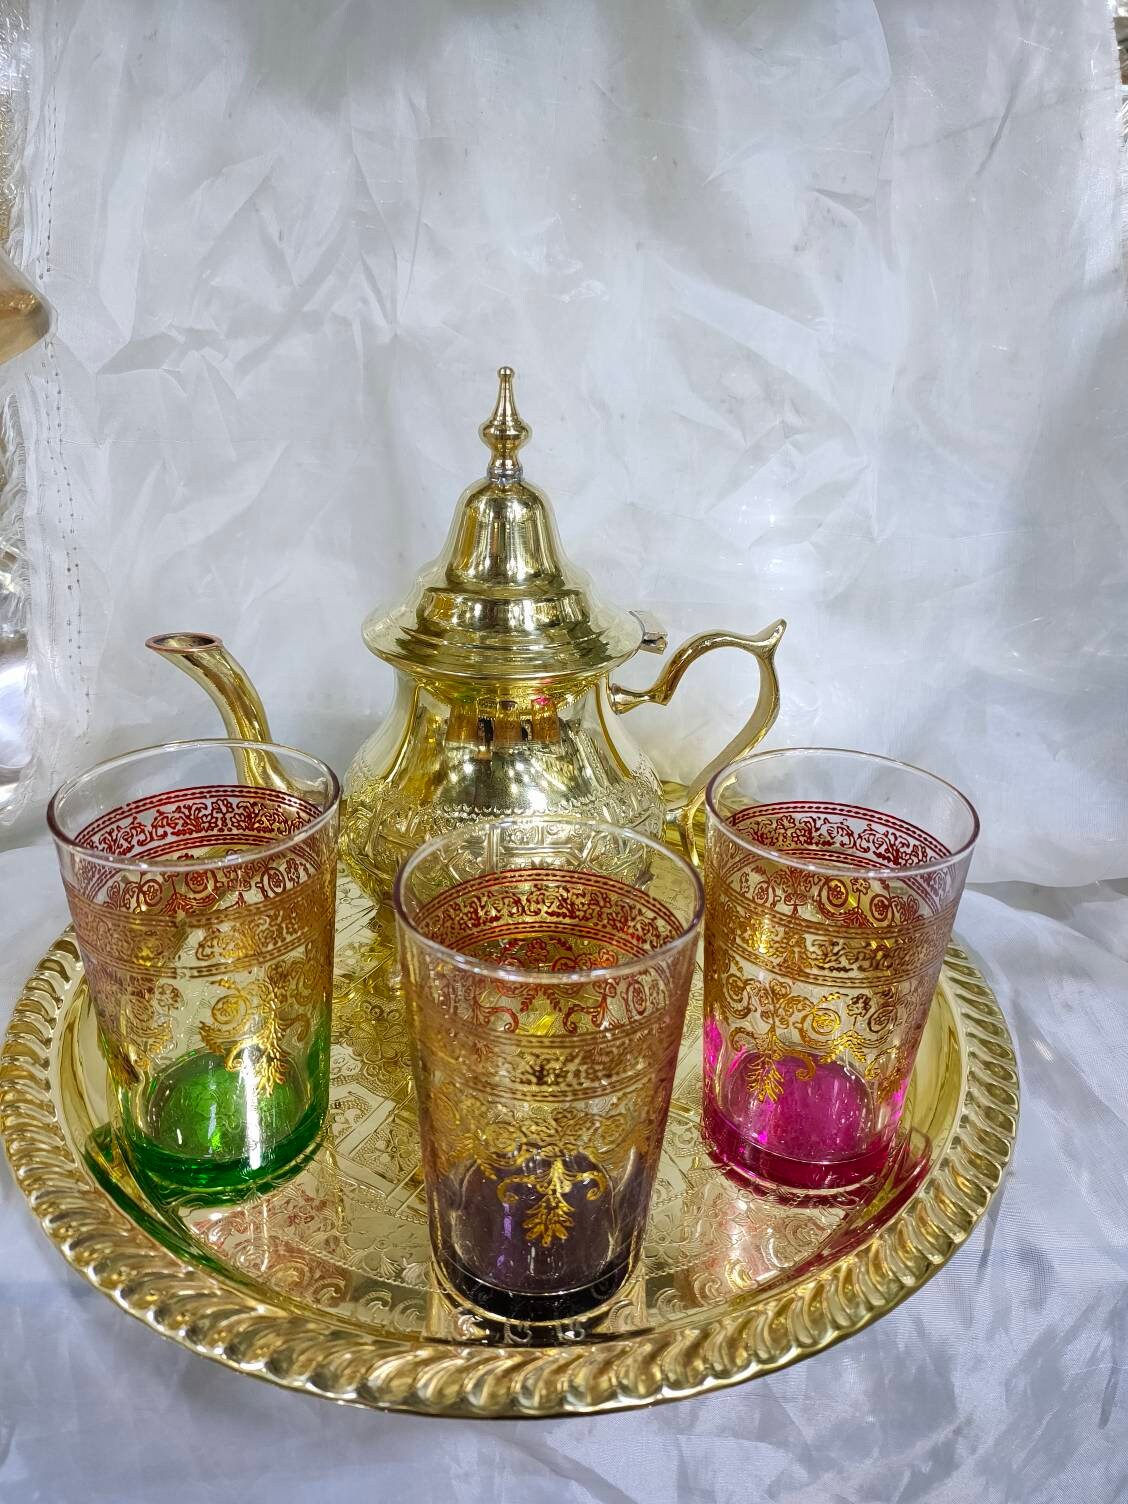 Juego de té marroquí completo. Tetera 750 ml bandeja 32 cm 6 vasos típicos  de cristal